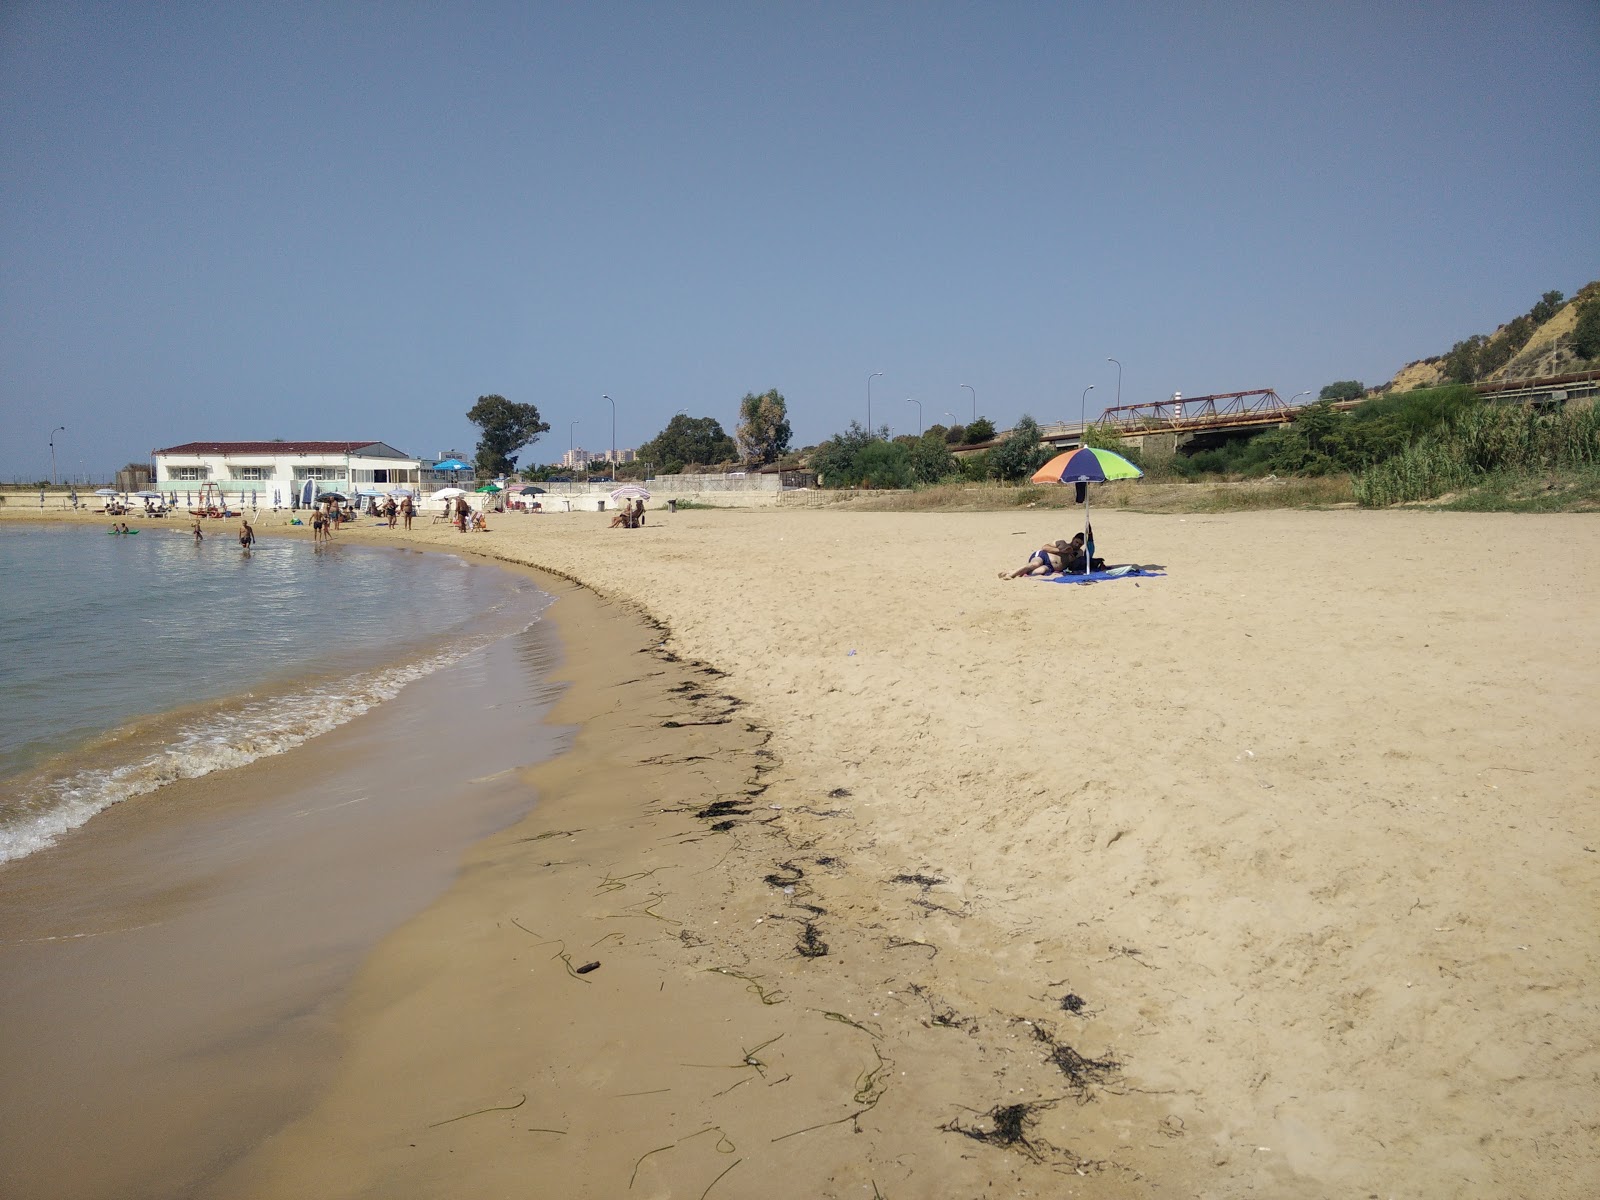 Fotografie cu Caos beach cu nivelul de curățenie înalt